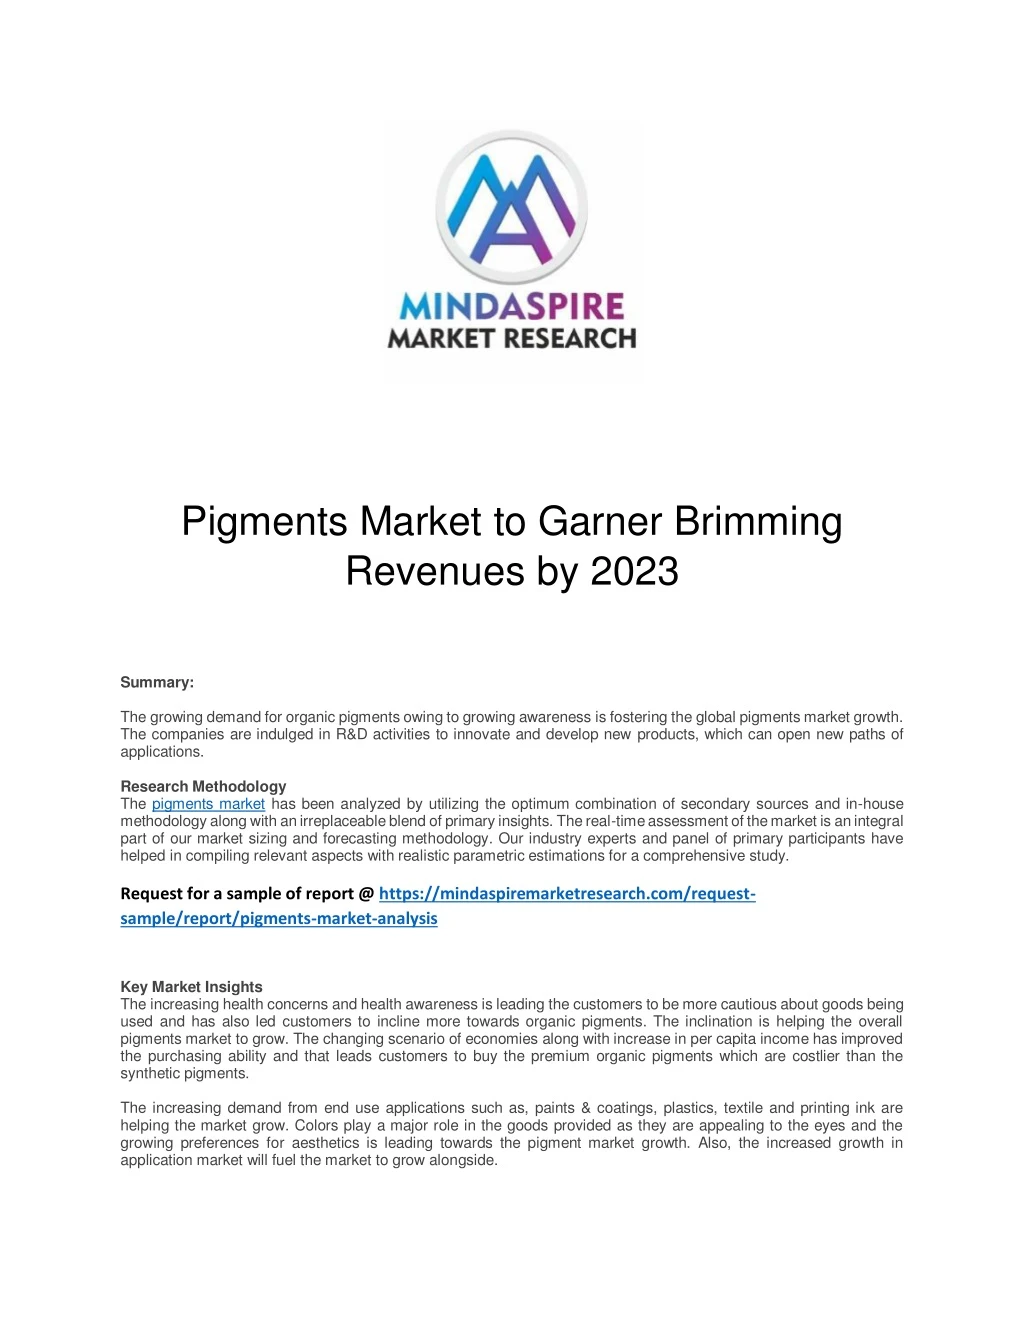 pigments market to garner brimming revenues